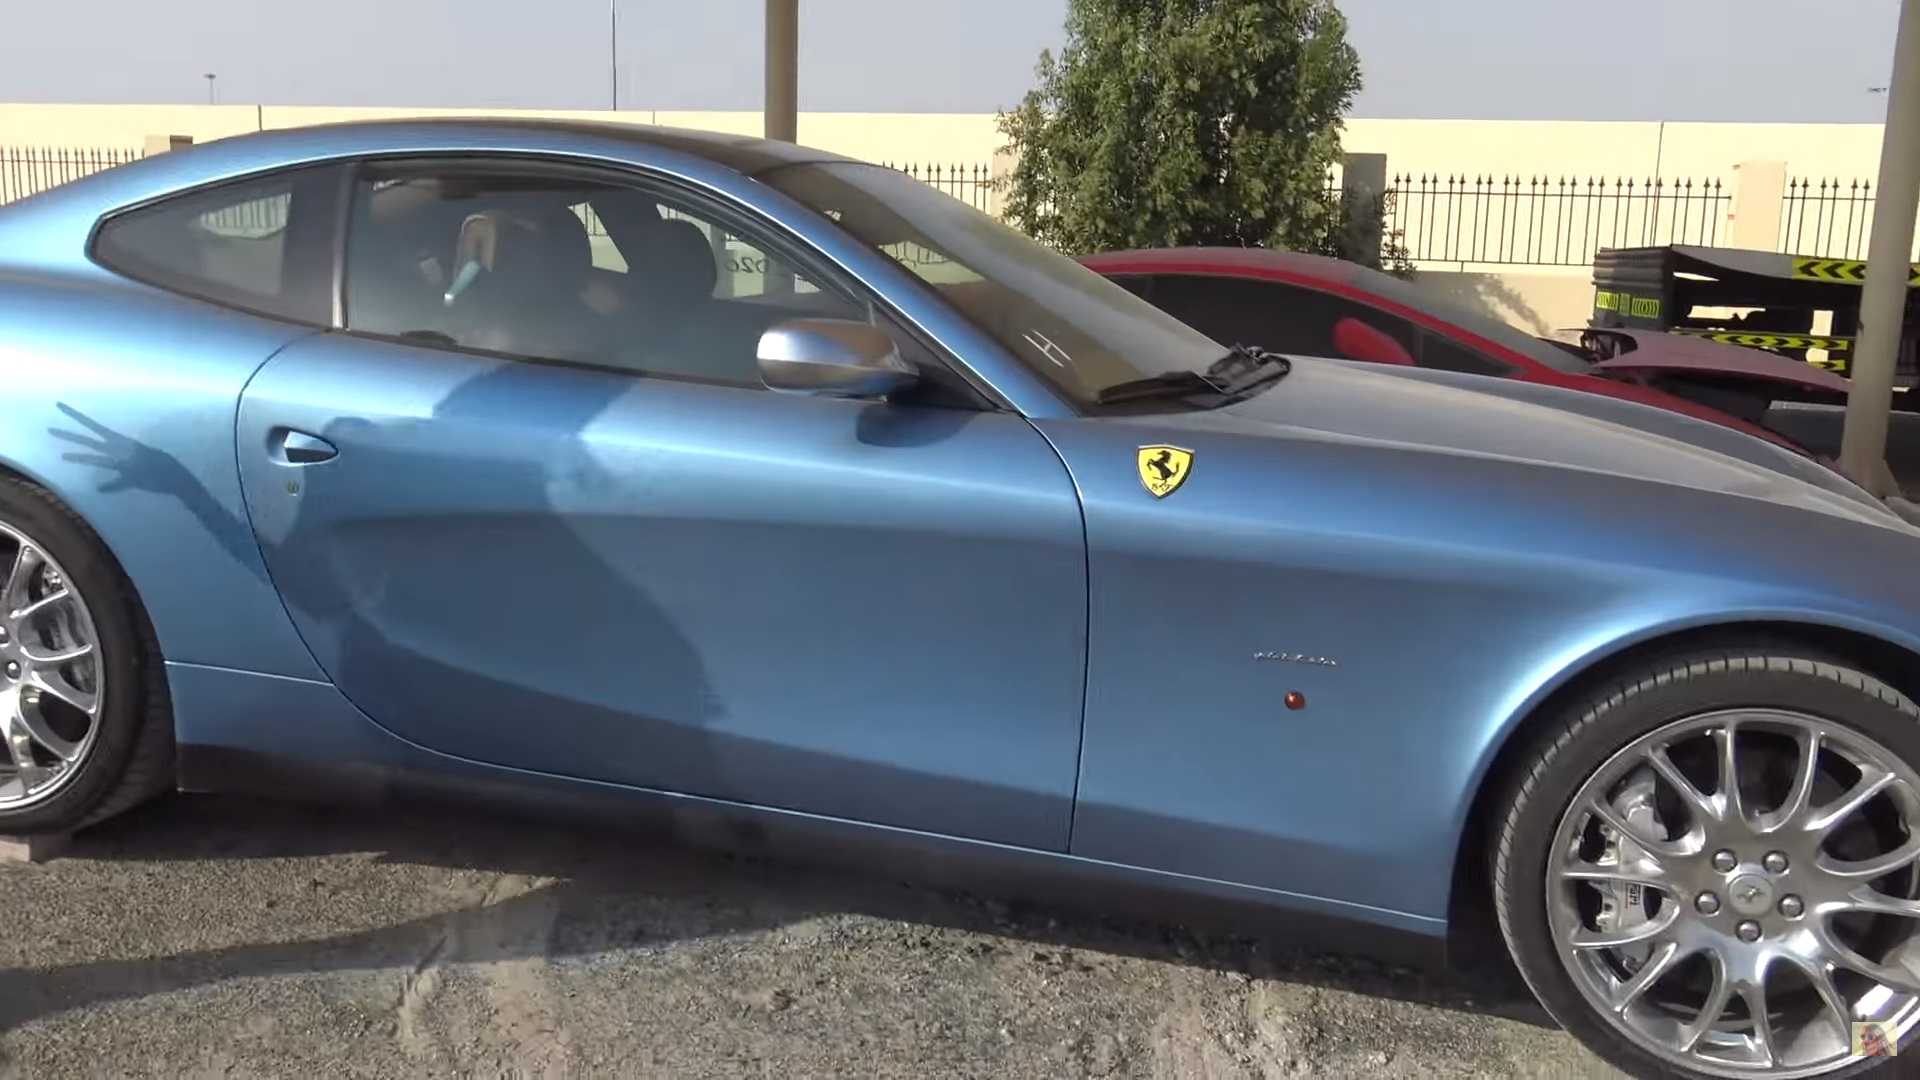 ساحة خردة في دبي تستضيف سيارات فاخرة ورياضية من كل نوع "فيديو" 6